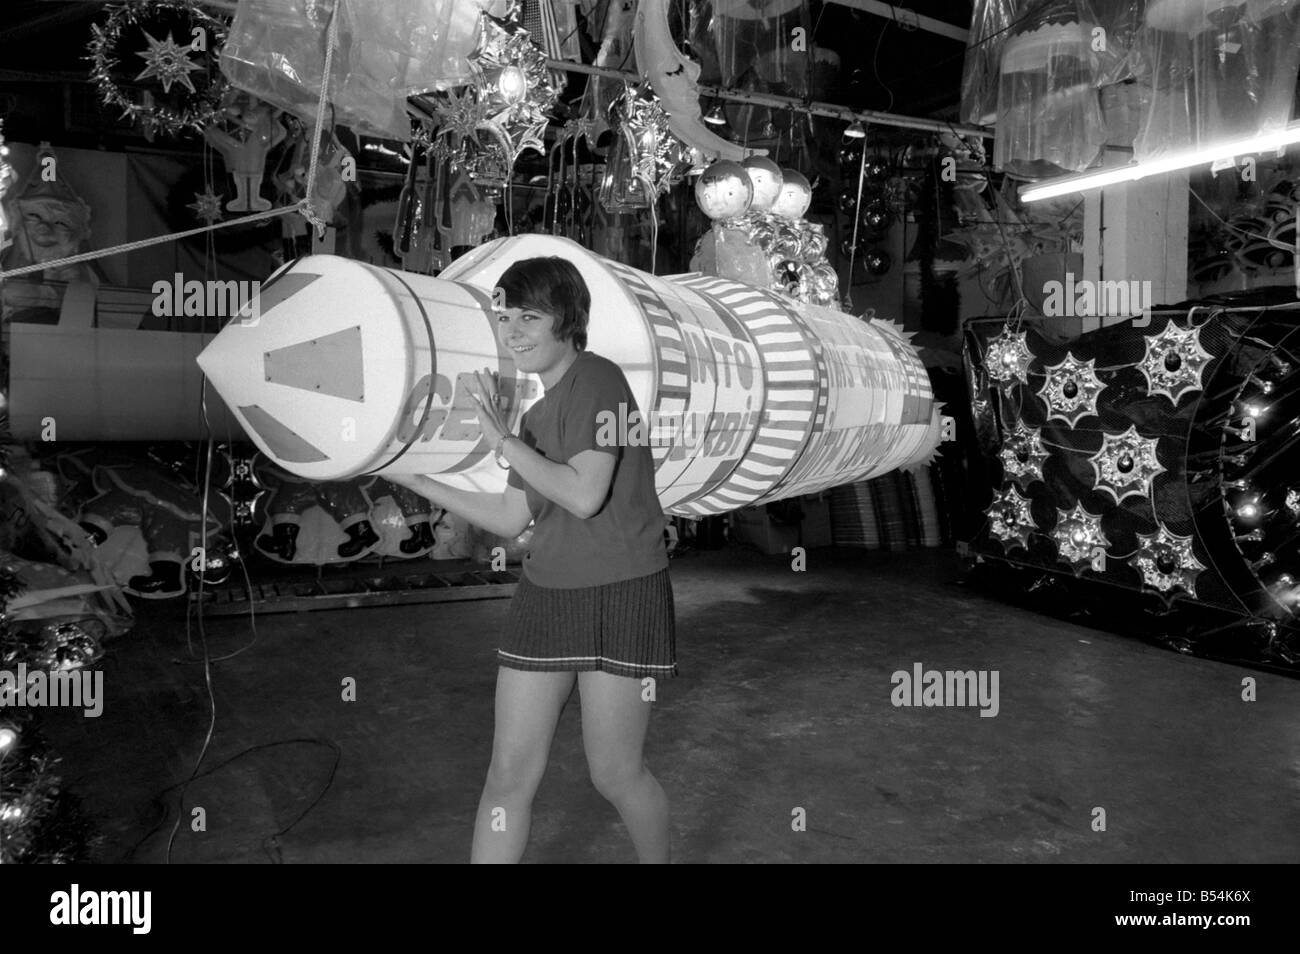 Entrare in orbita è il tema di questo anno le luminarie di Natale in Carnaby Street. Il sollevamento del razzo è Michelle Futter (17) da Martlesham, Suffolk. Novembre 1969 Z10876-001 Foto Stock